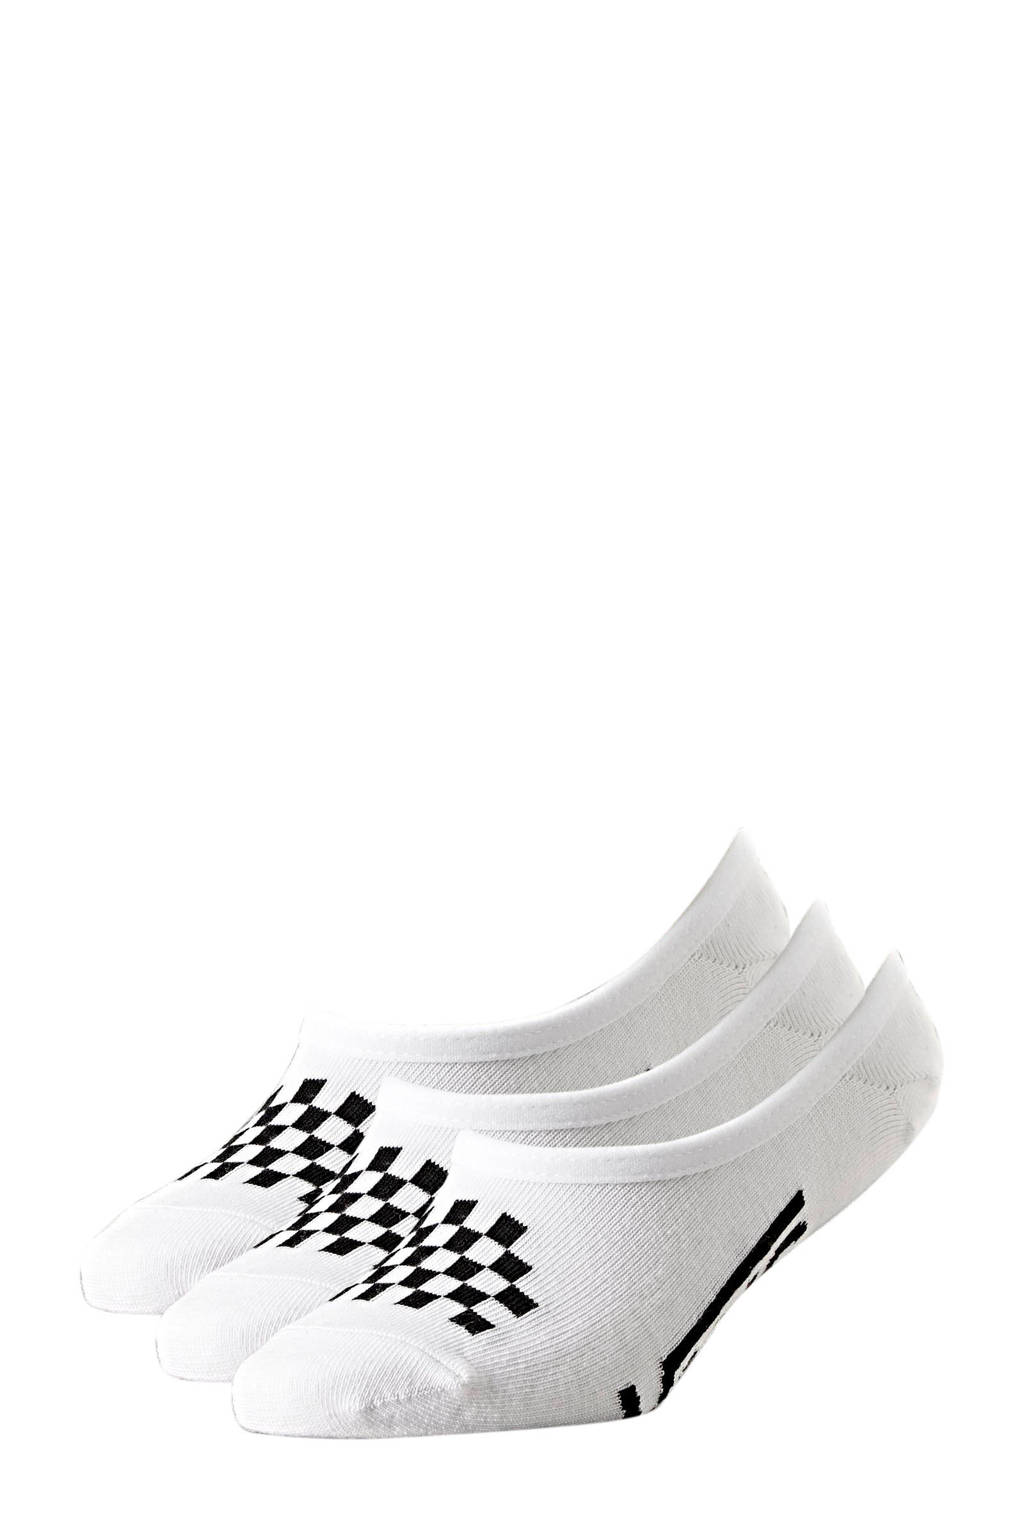 VANS sneakersokken - set van 3 wit, Wit/zwart